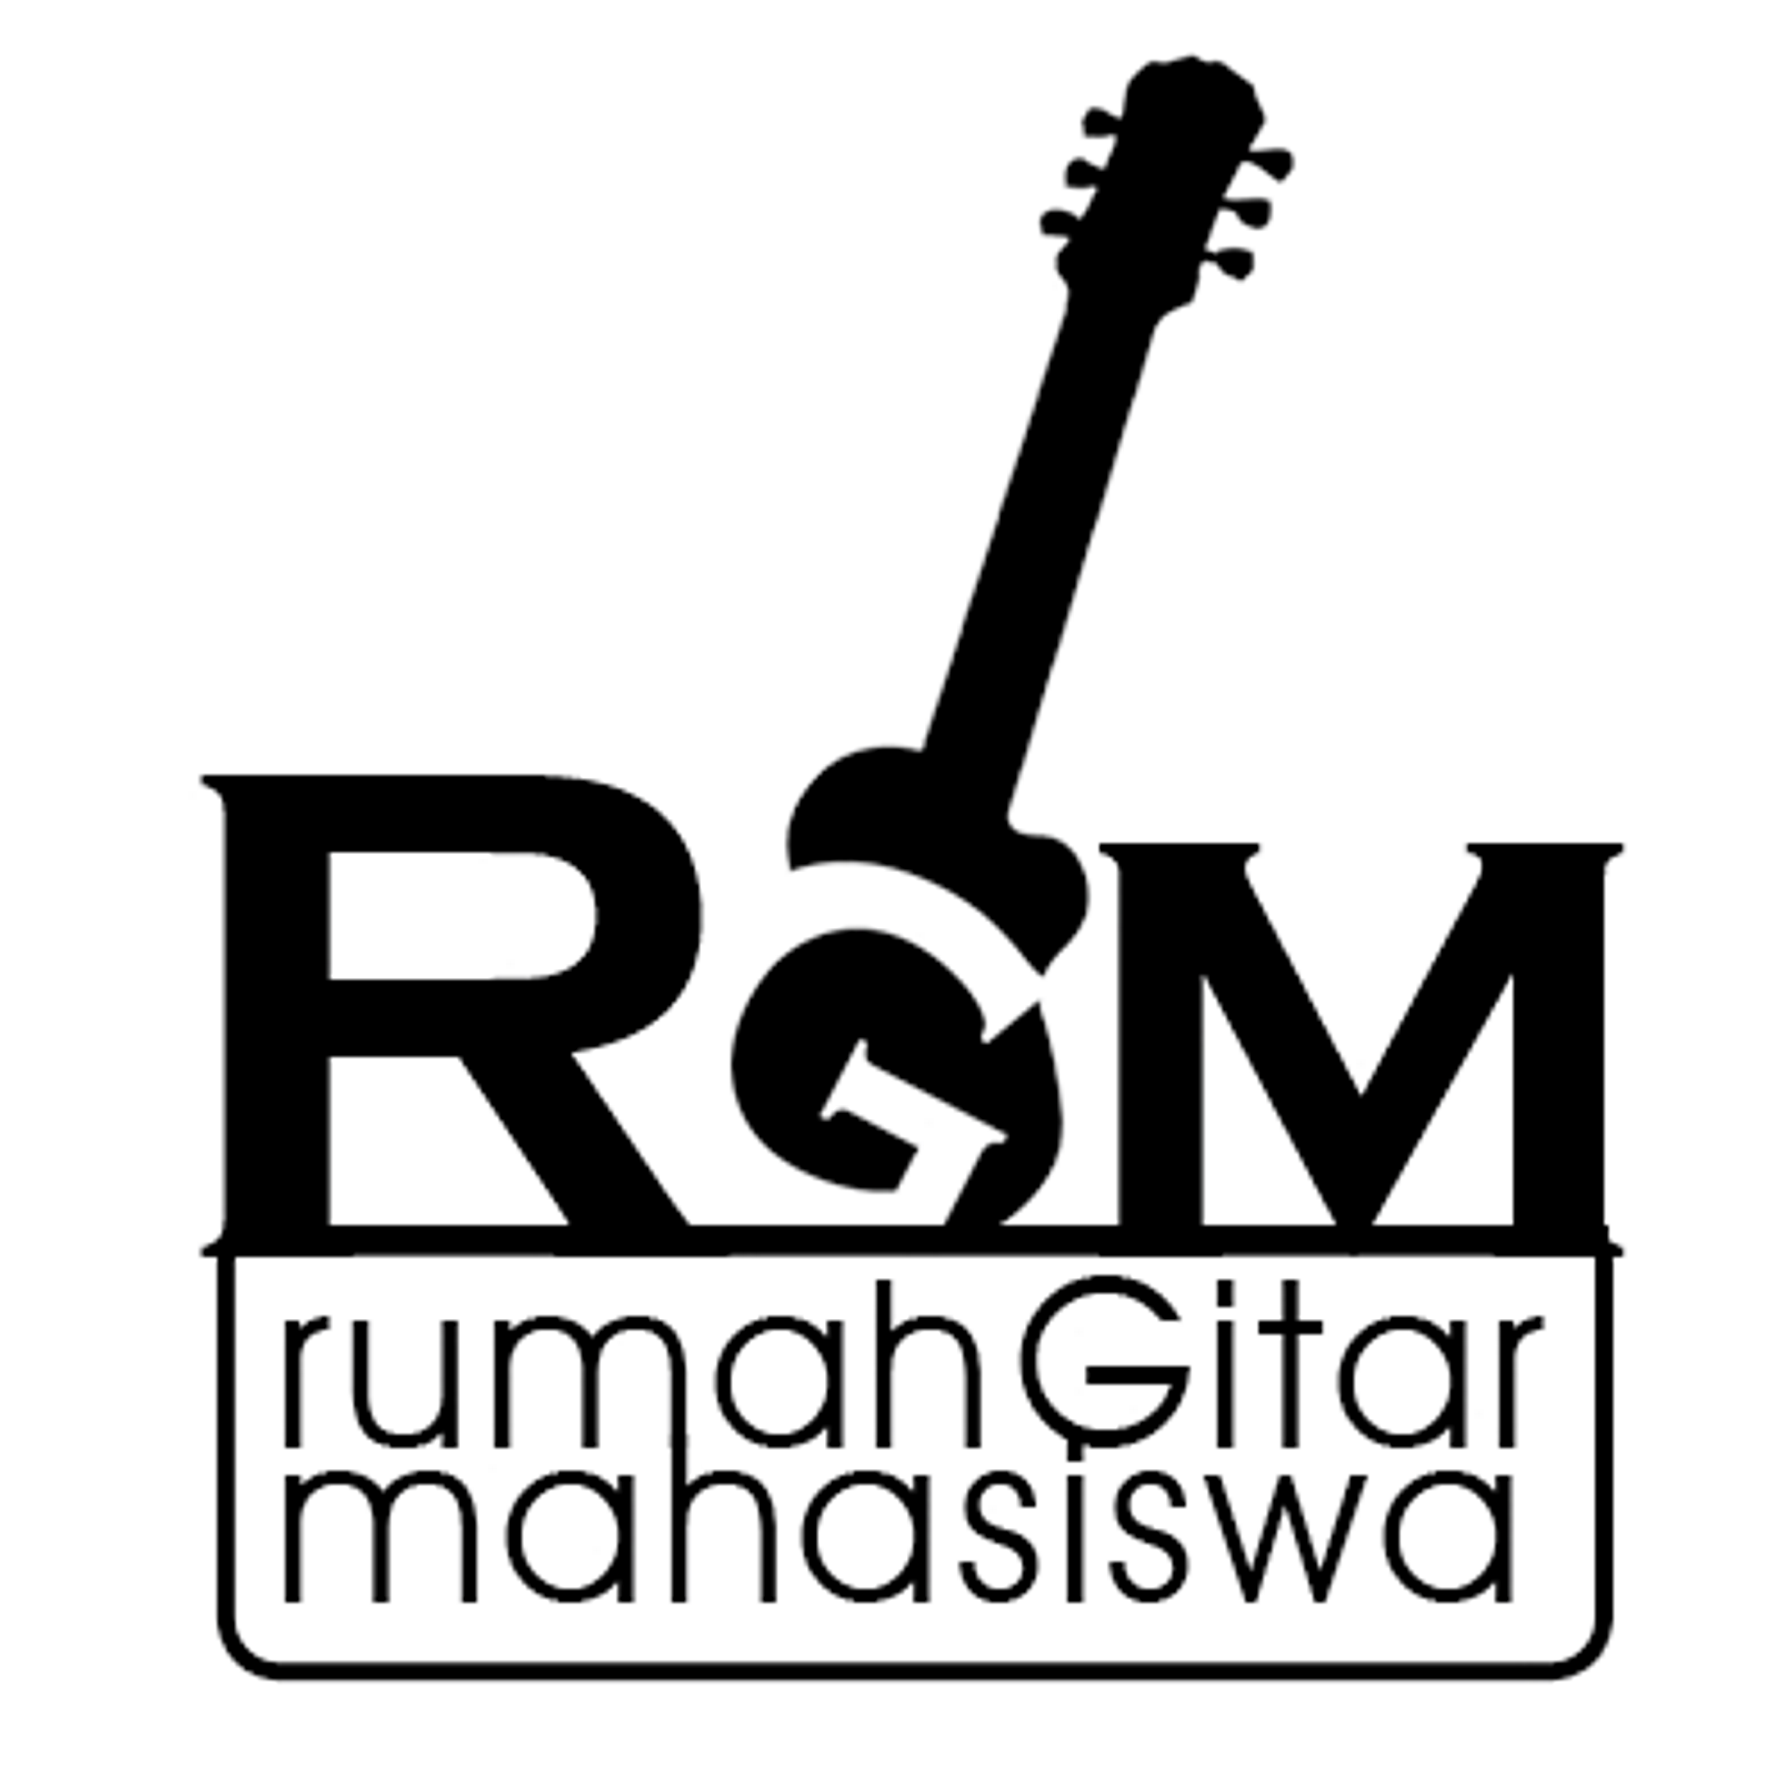 | Rumah Gitar Mahasiswa [RGM] | 
| Classic and Electric Guitar Division| HIMA Musik | Departemen Pendidikan Seni Musik UPI Bandung |